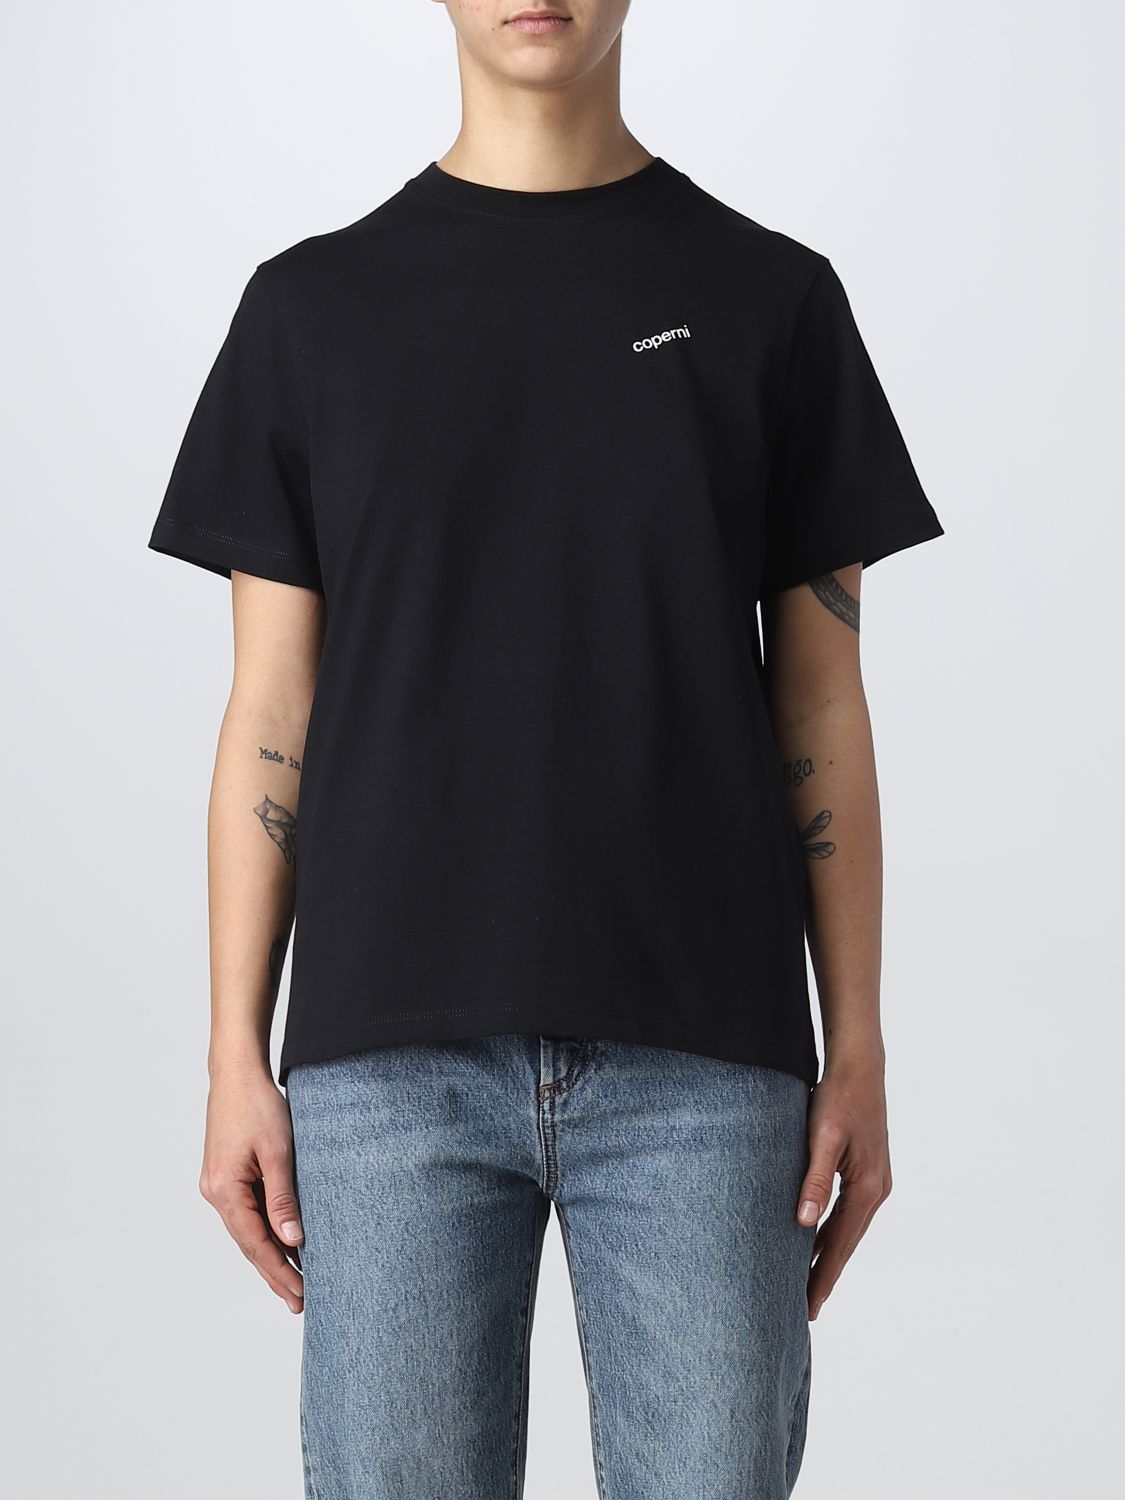 COPERNI: t-shirt for woman - Black | Coperni t-shirt COPJS03504 online ...